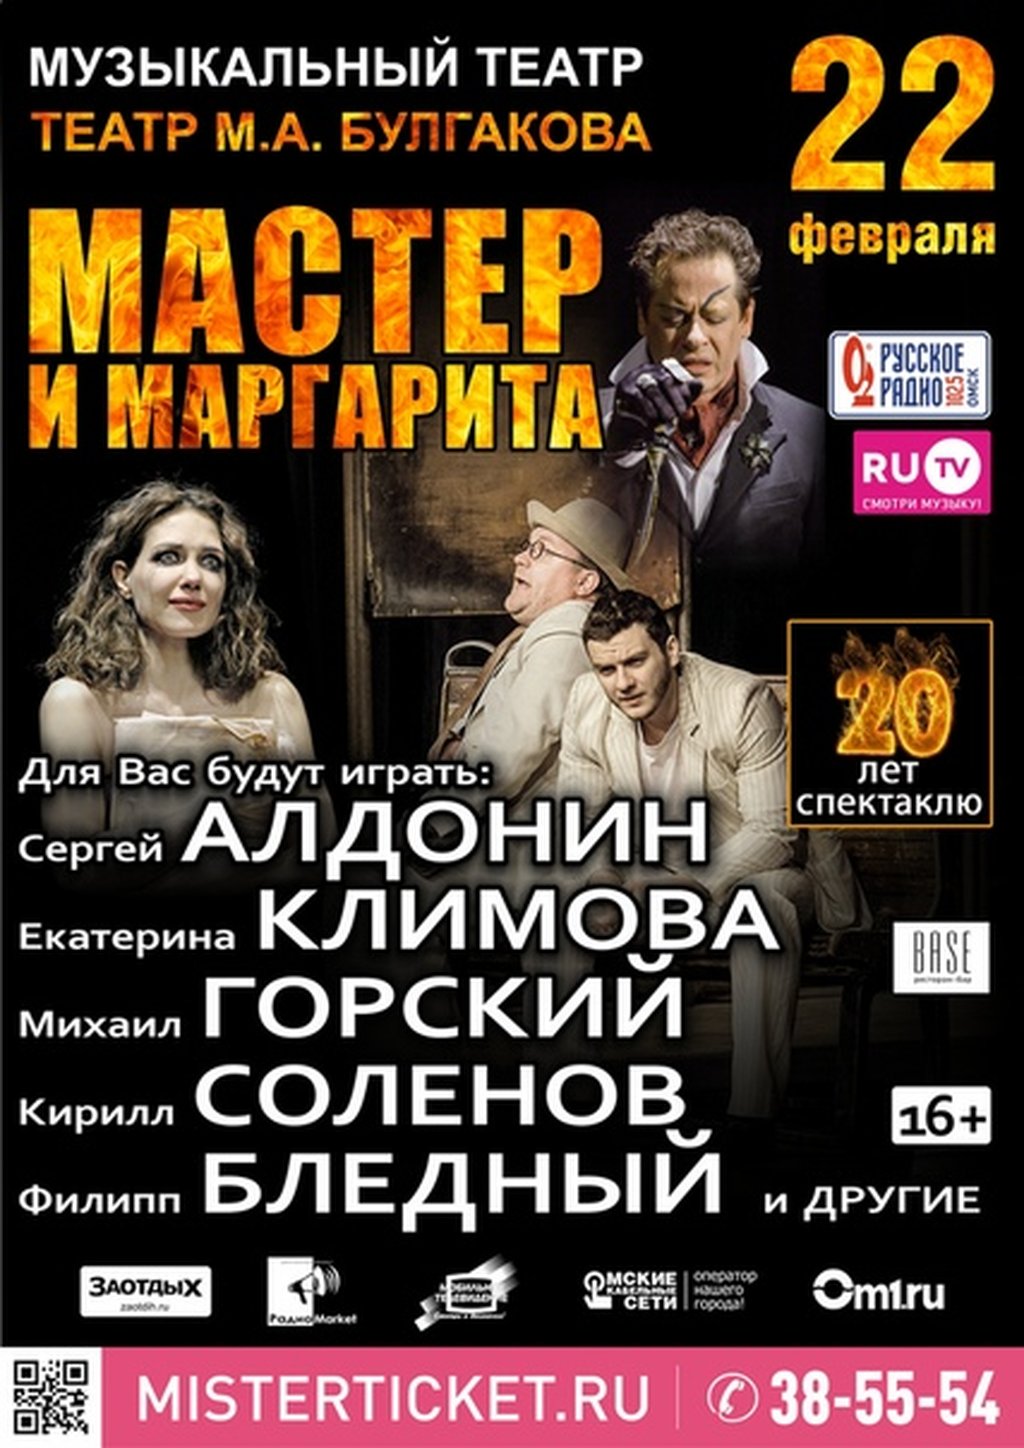 Афиша музыкального театра в омске